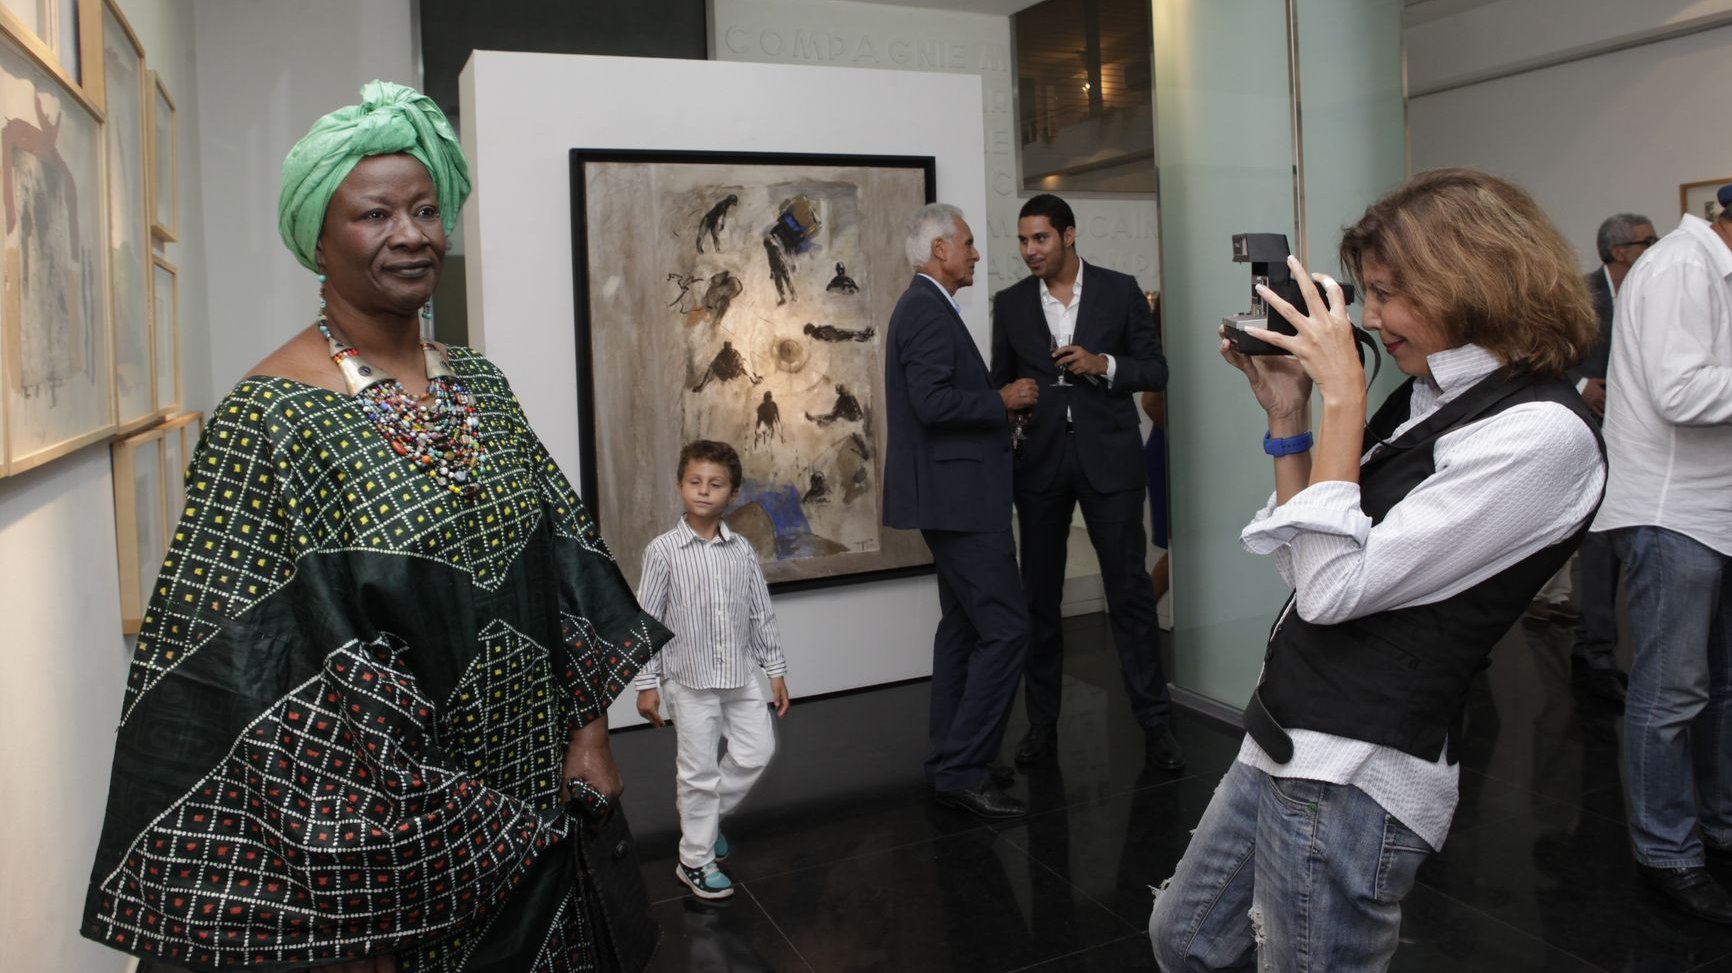 L'ex ministre malienne de la Culture, Aminata Dramane Traore, a marqué de sa somptueuse présence cette soirée durant laquelle l'actrice marocaine Latefa Ahrare, qui la prend ici en photo, lira des poèmes de Mohamed Kacimi.
